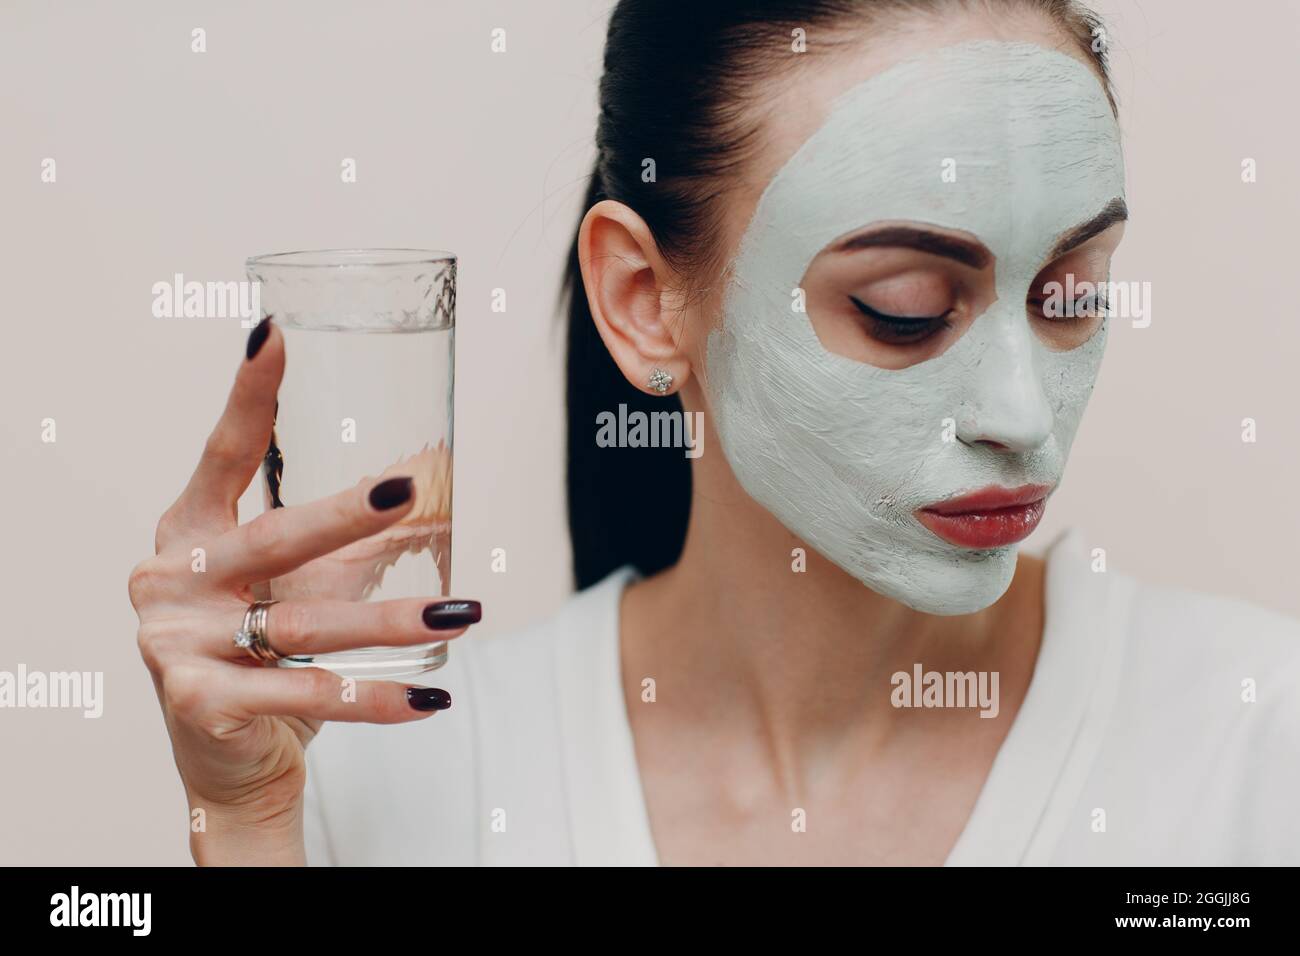 Junge schöne Frau erhält Gesichtsmaske aus Ton mit einem Glas Wasser. Stockfoto